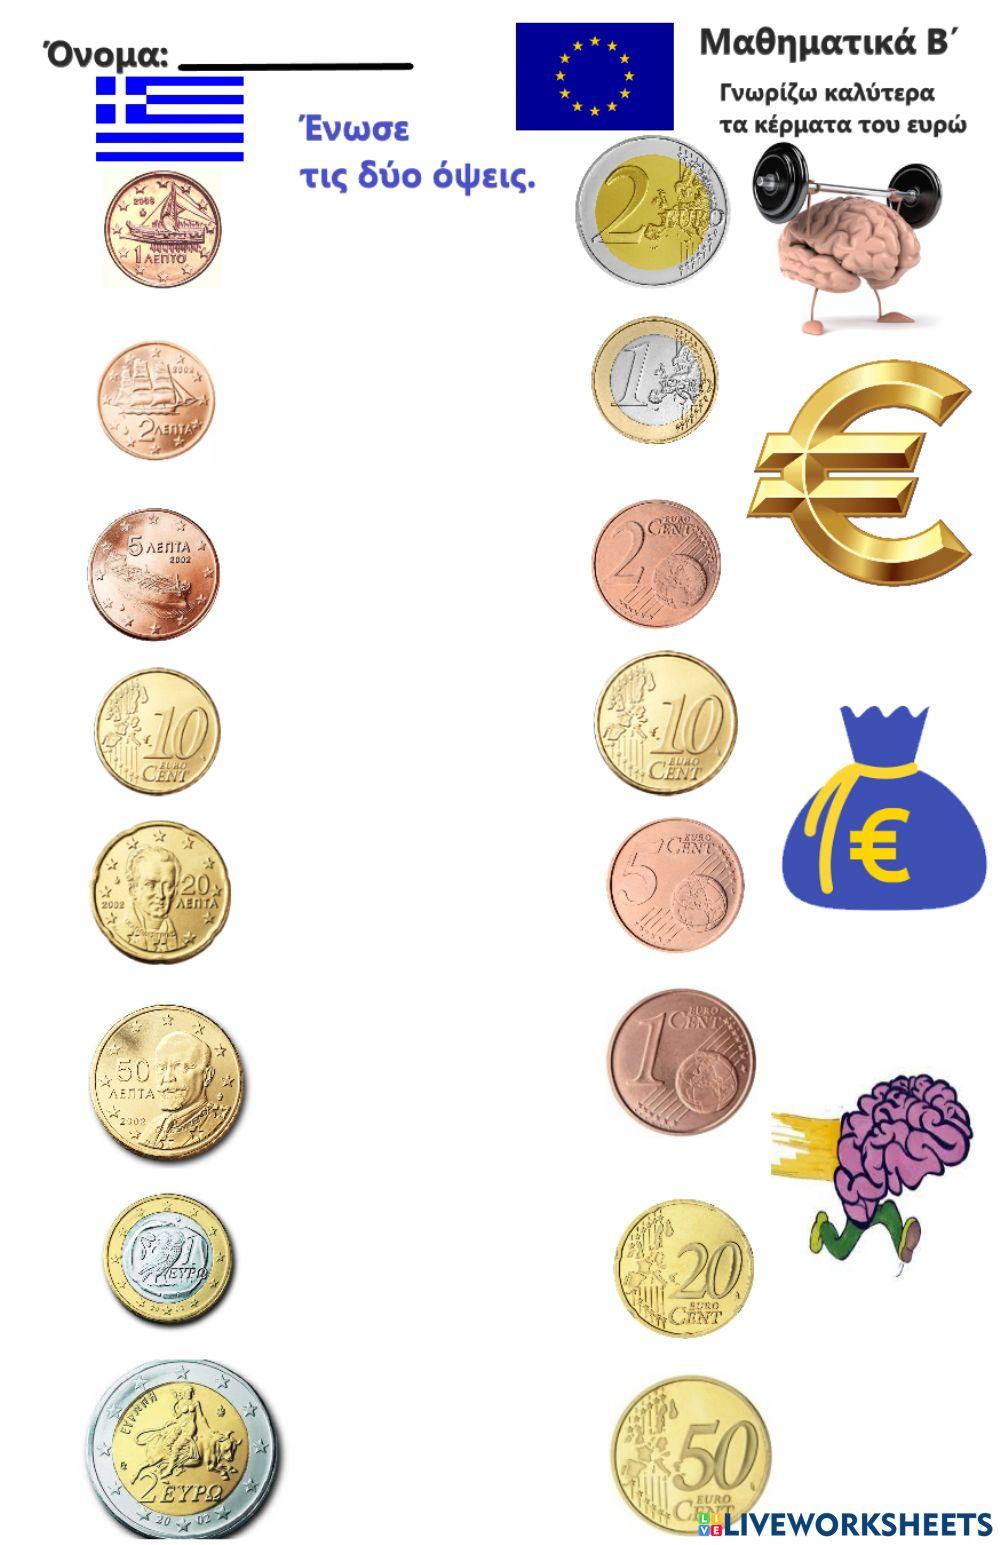 Μαθαίνω το ευρώ